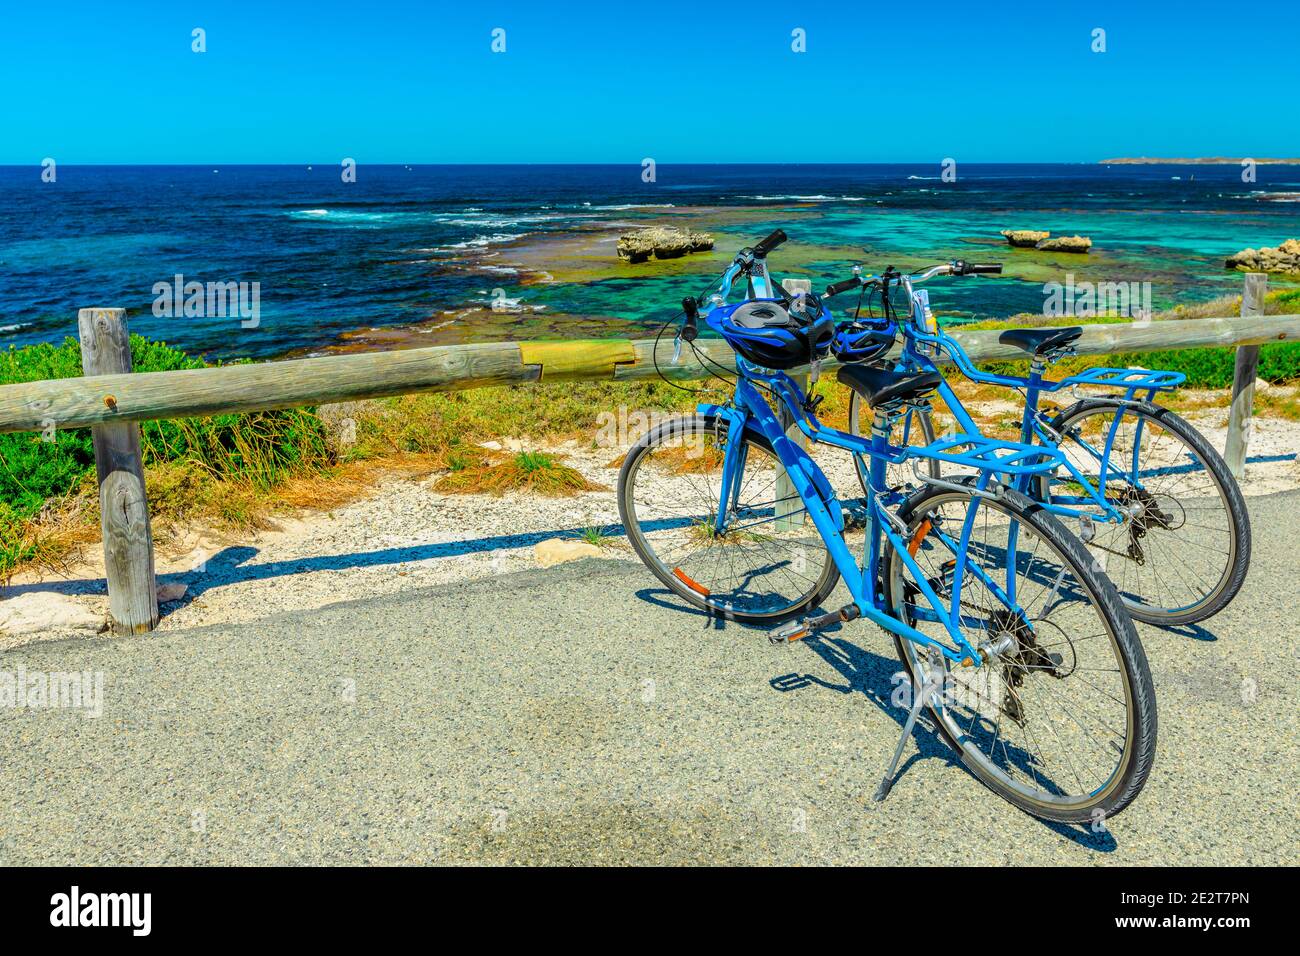 Biciclette turistiche parcheggiate al Parker Point, un punto panoramico che si affaccia sulle spiagge tropicali e bianche incontaminate della Rottnest Island dell'Australia Occidentale, una popolare Foto Stock